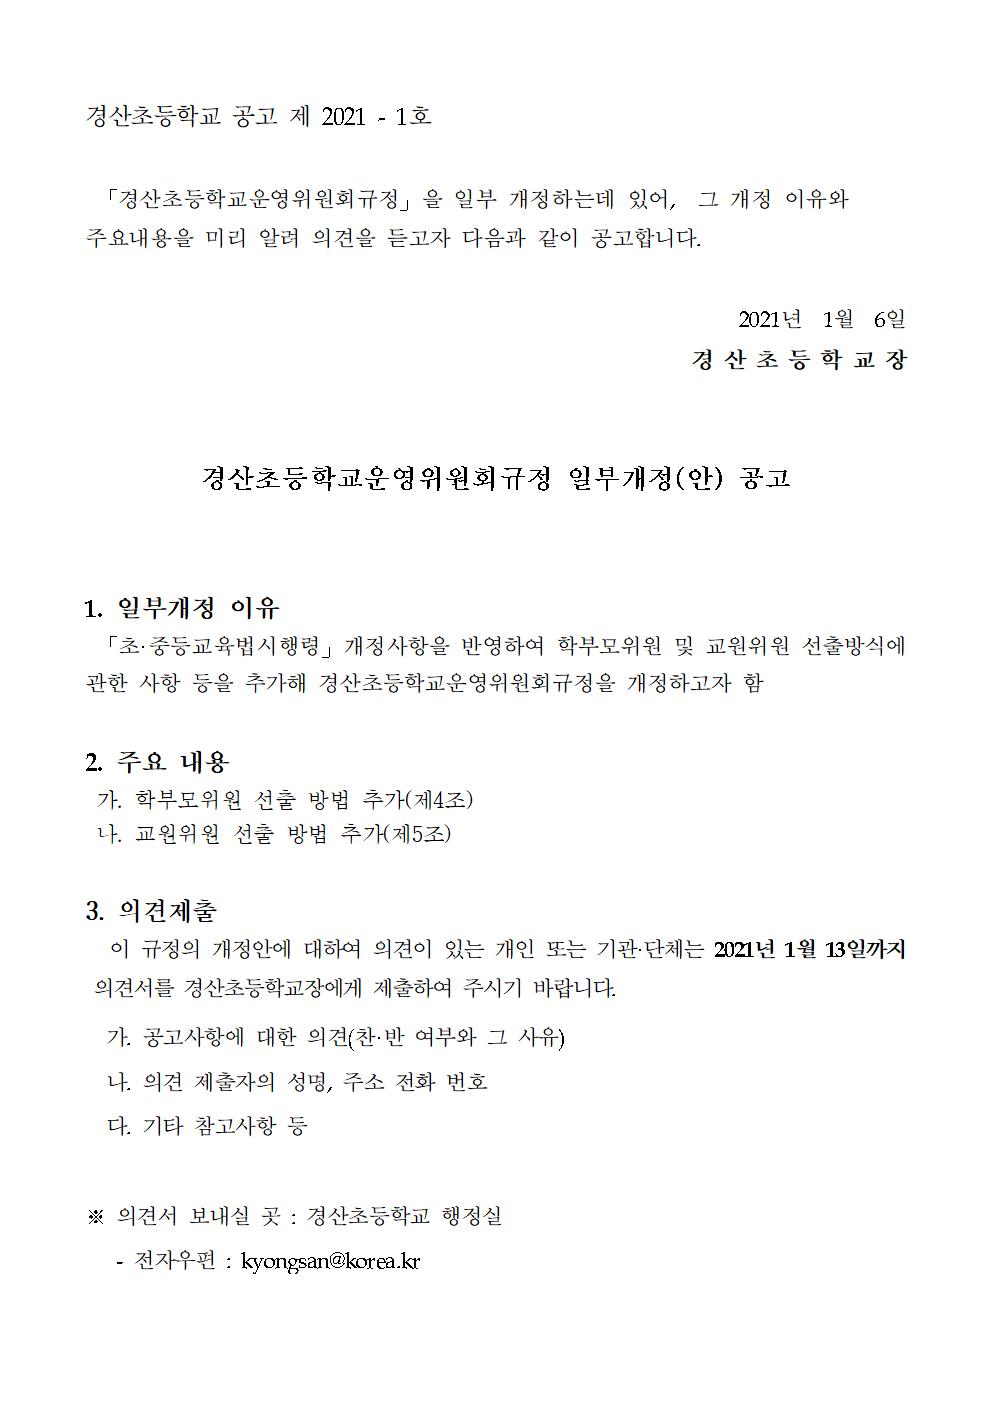 경산초등학교운영위원회 규정 개정(안) 공고문001